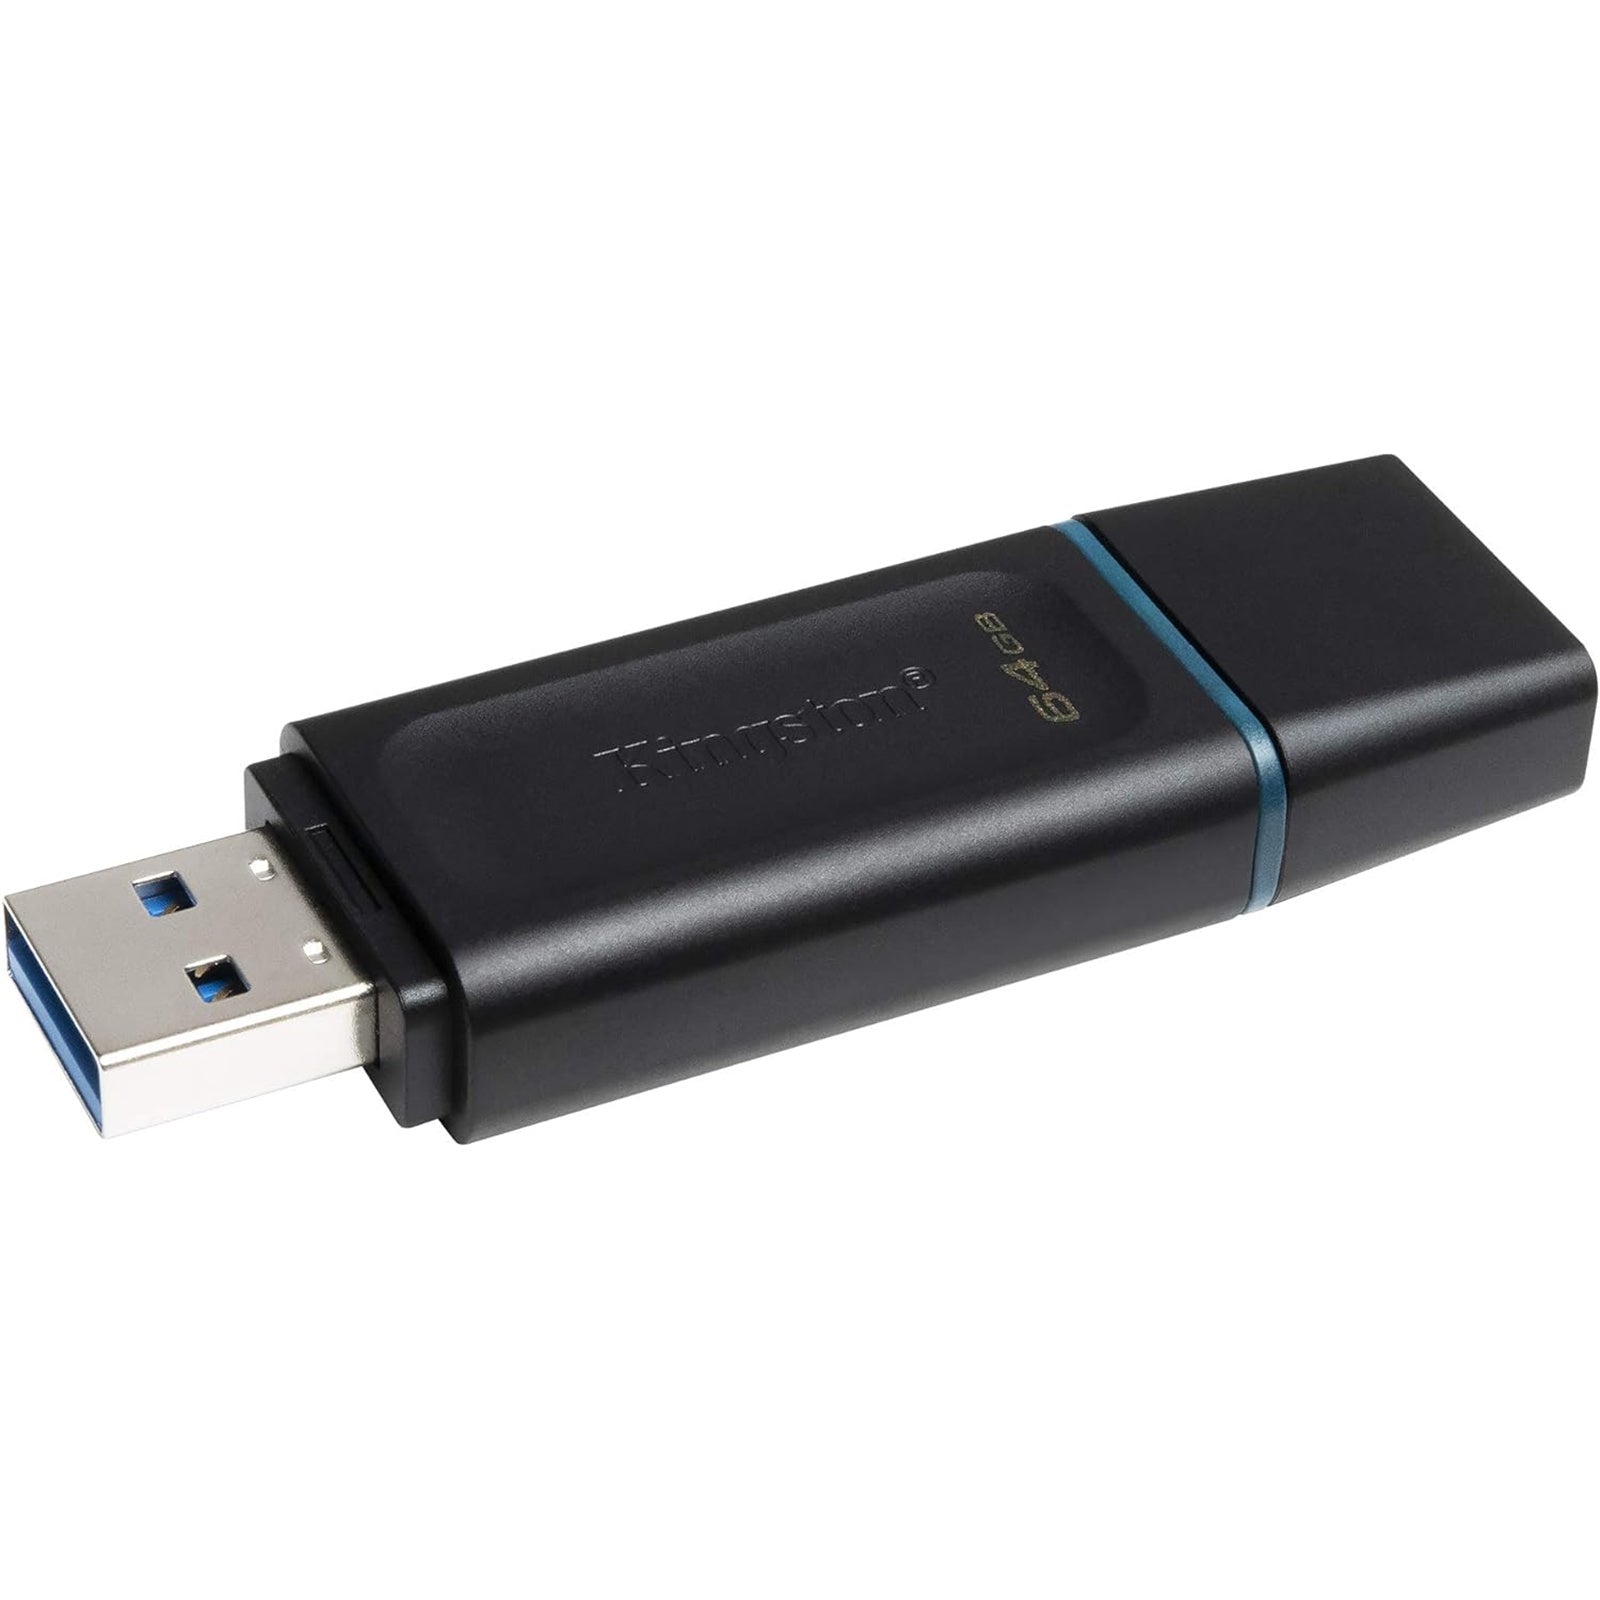 Kingston DTX 64GB USB Flash Drive with Cap 3.2 64GB